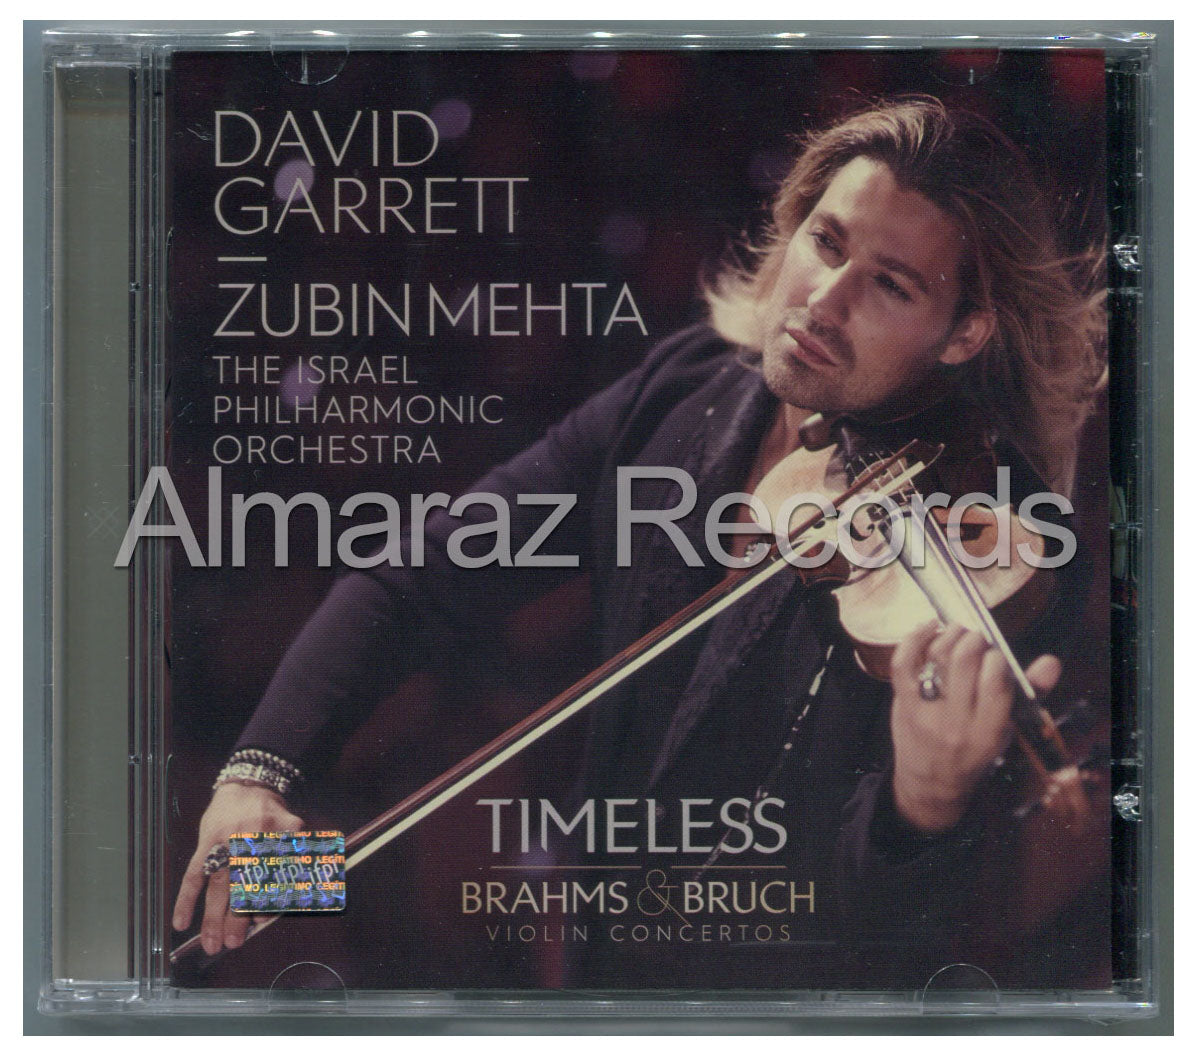 David Garret Zubin Mehta Timeless Brahms & Bruch Violin Concertos CD - Almaraz Records | Tienda de Discos y Películas
 - 1